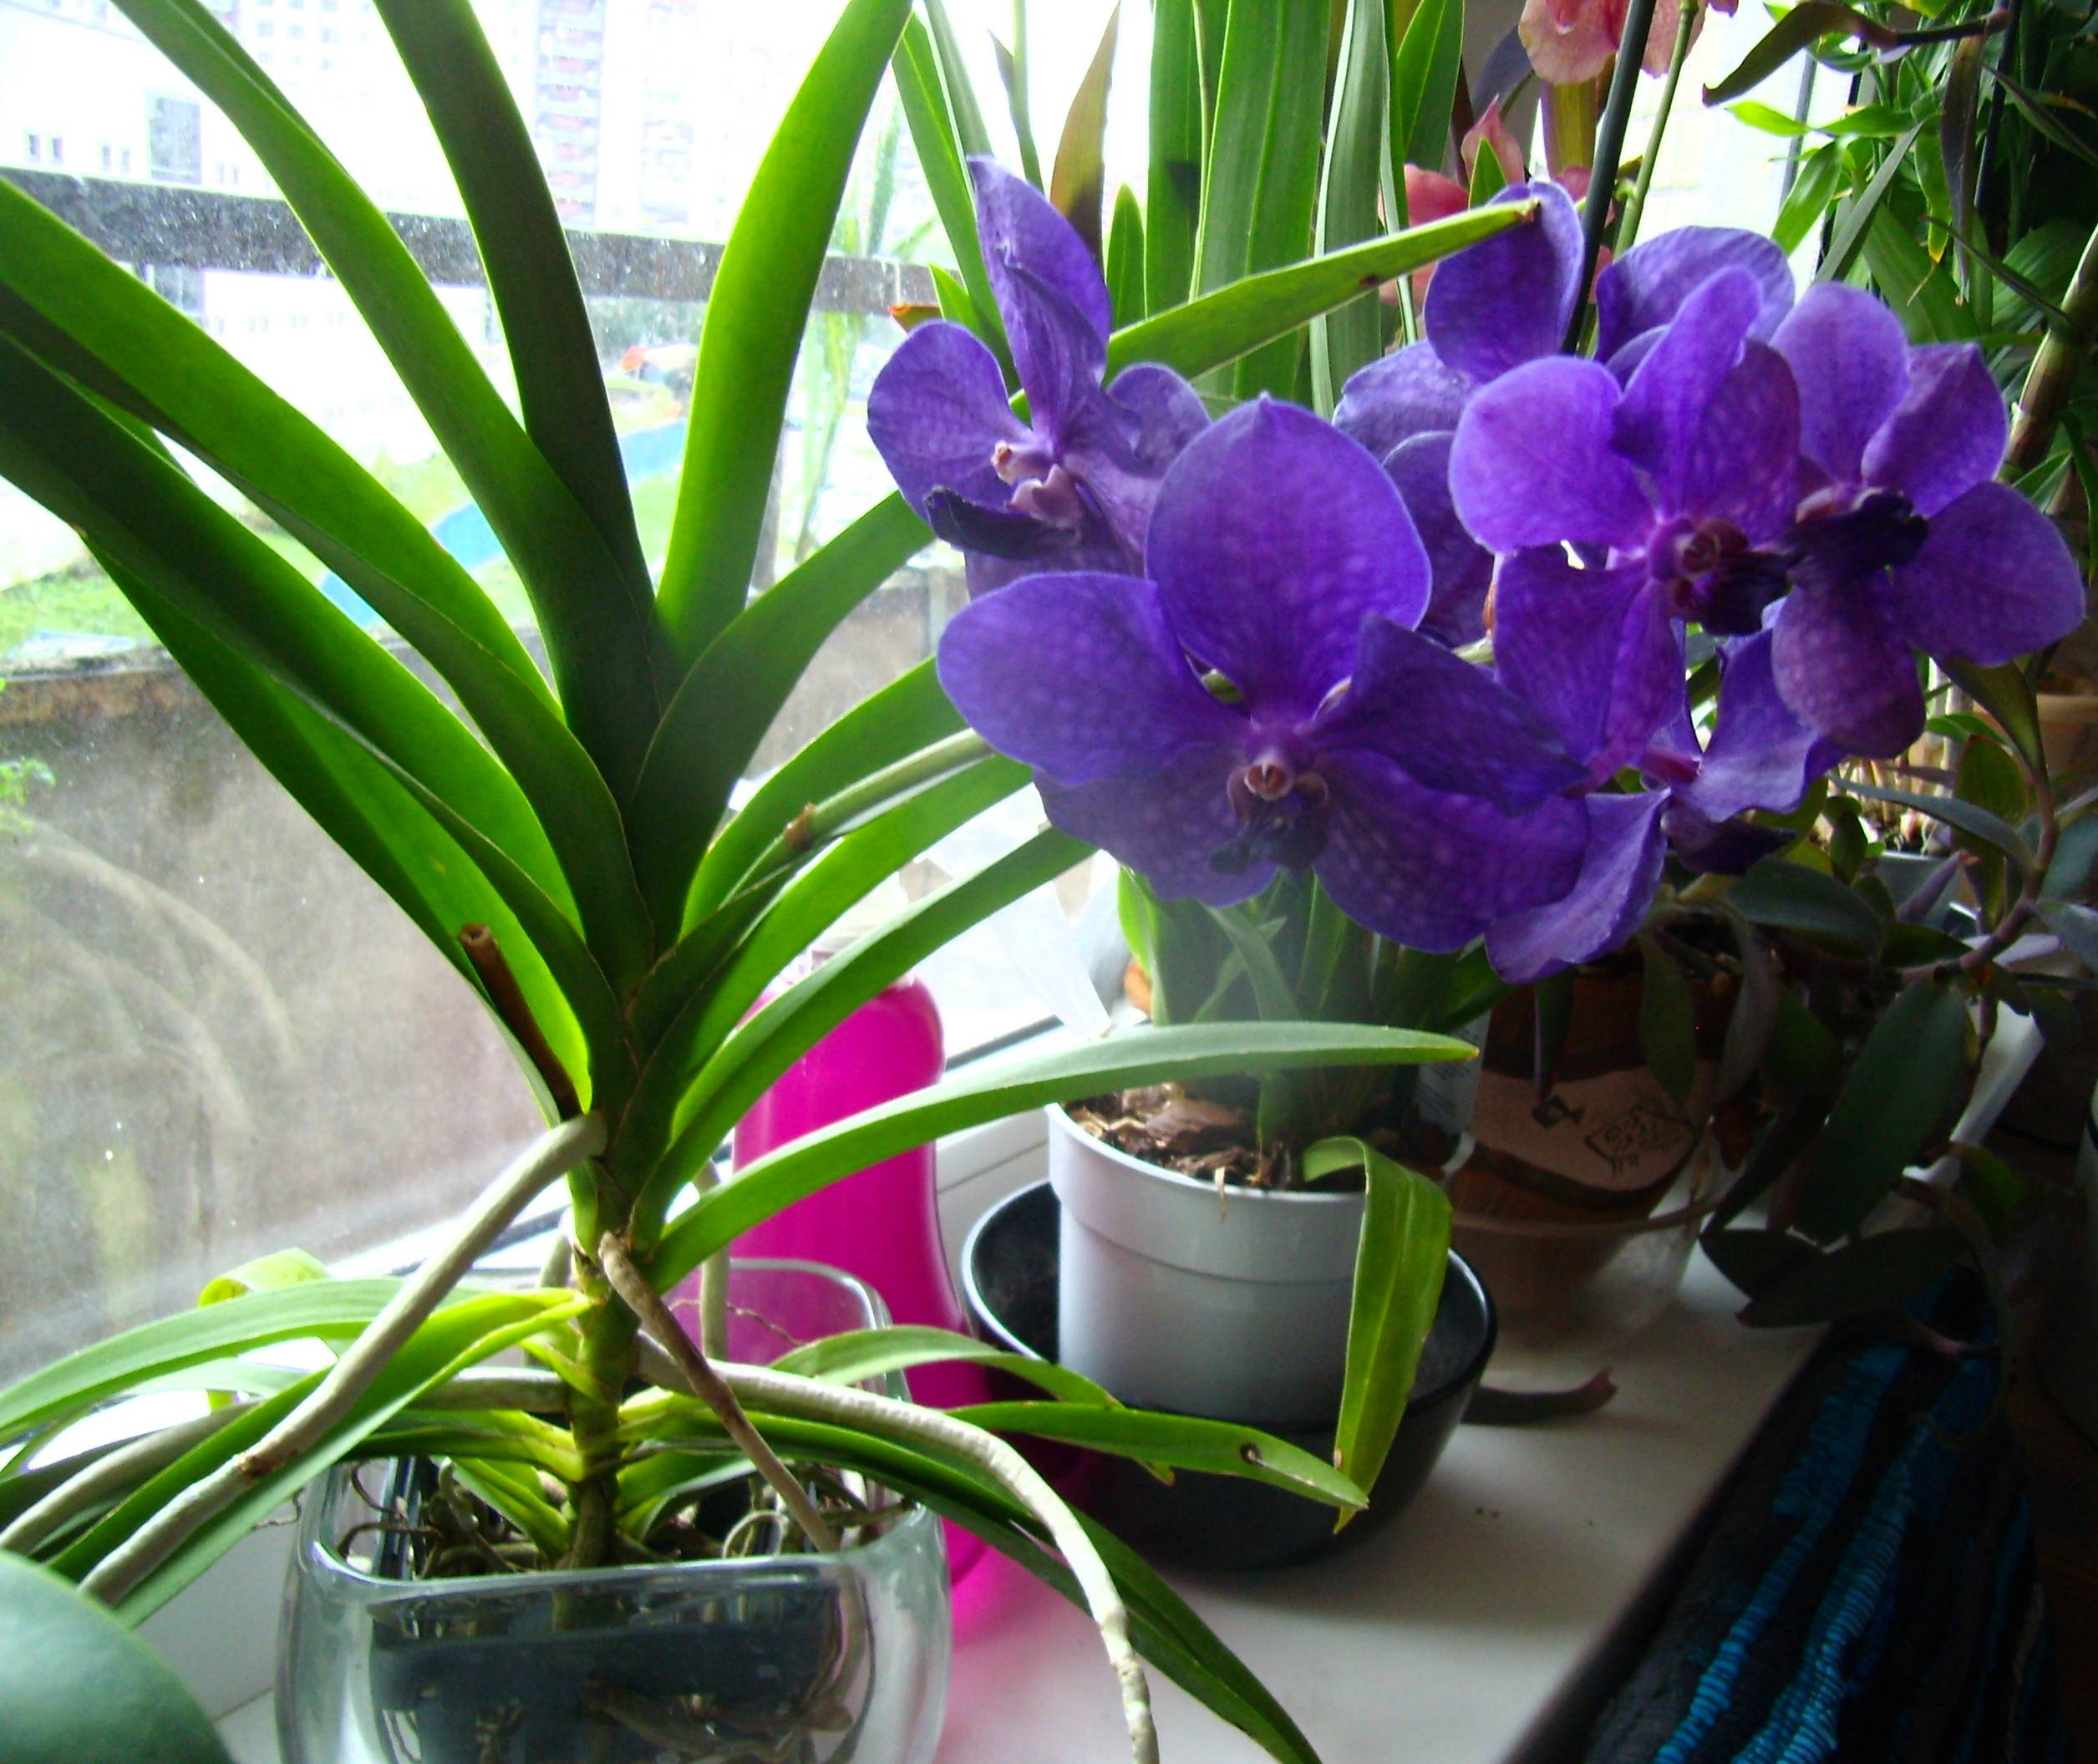 Выращивание орхидеи ванда в домашних условиях: советы эксперта